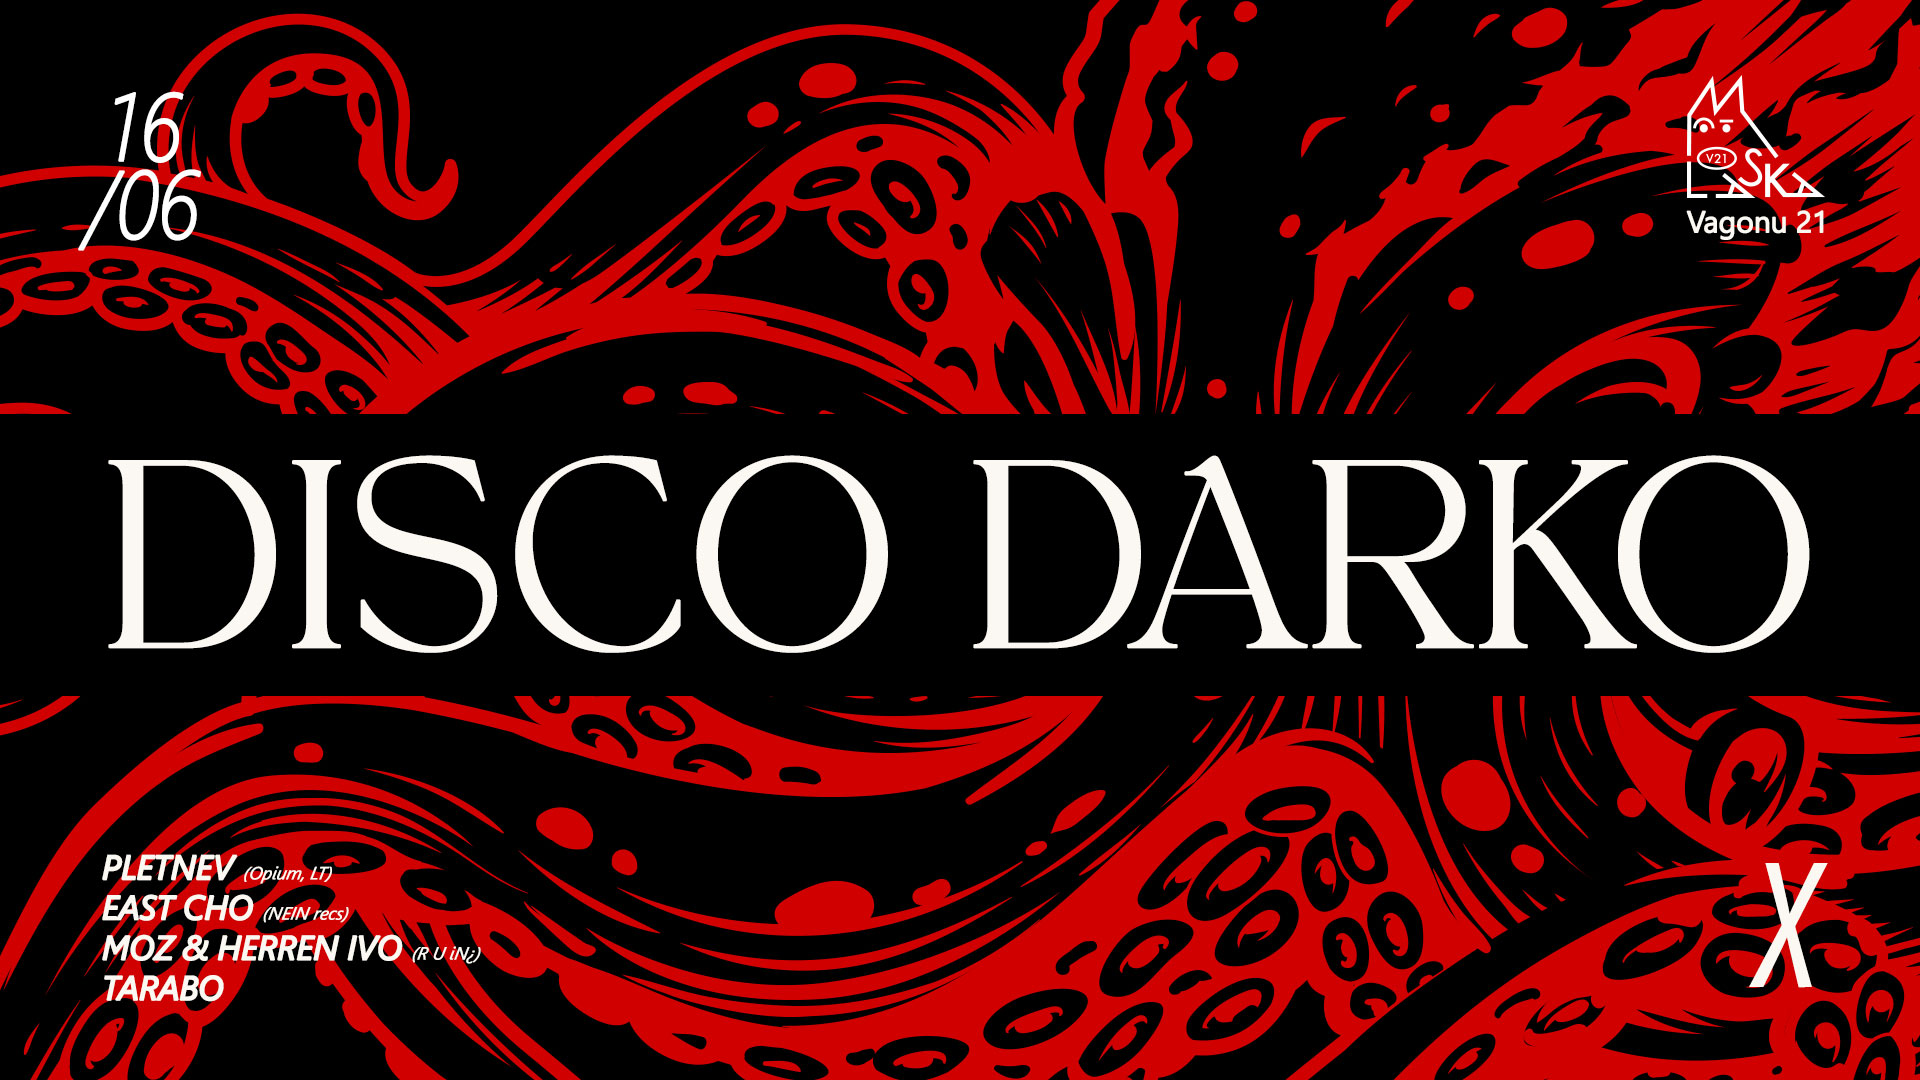 Disco Darko